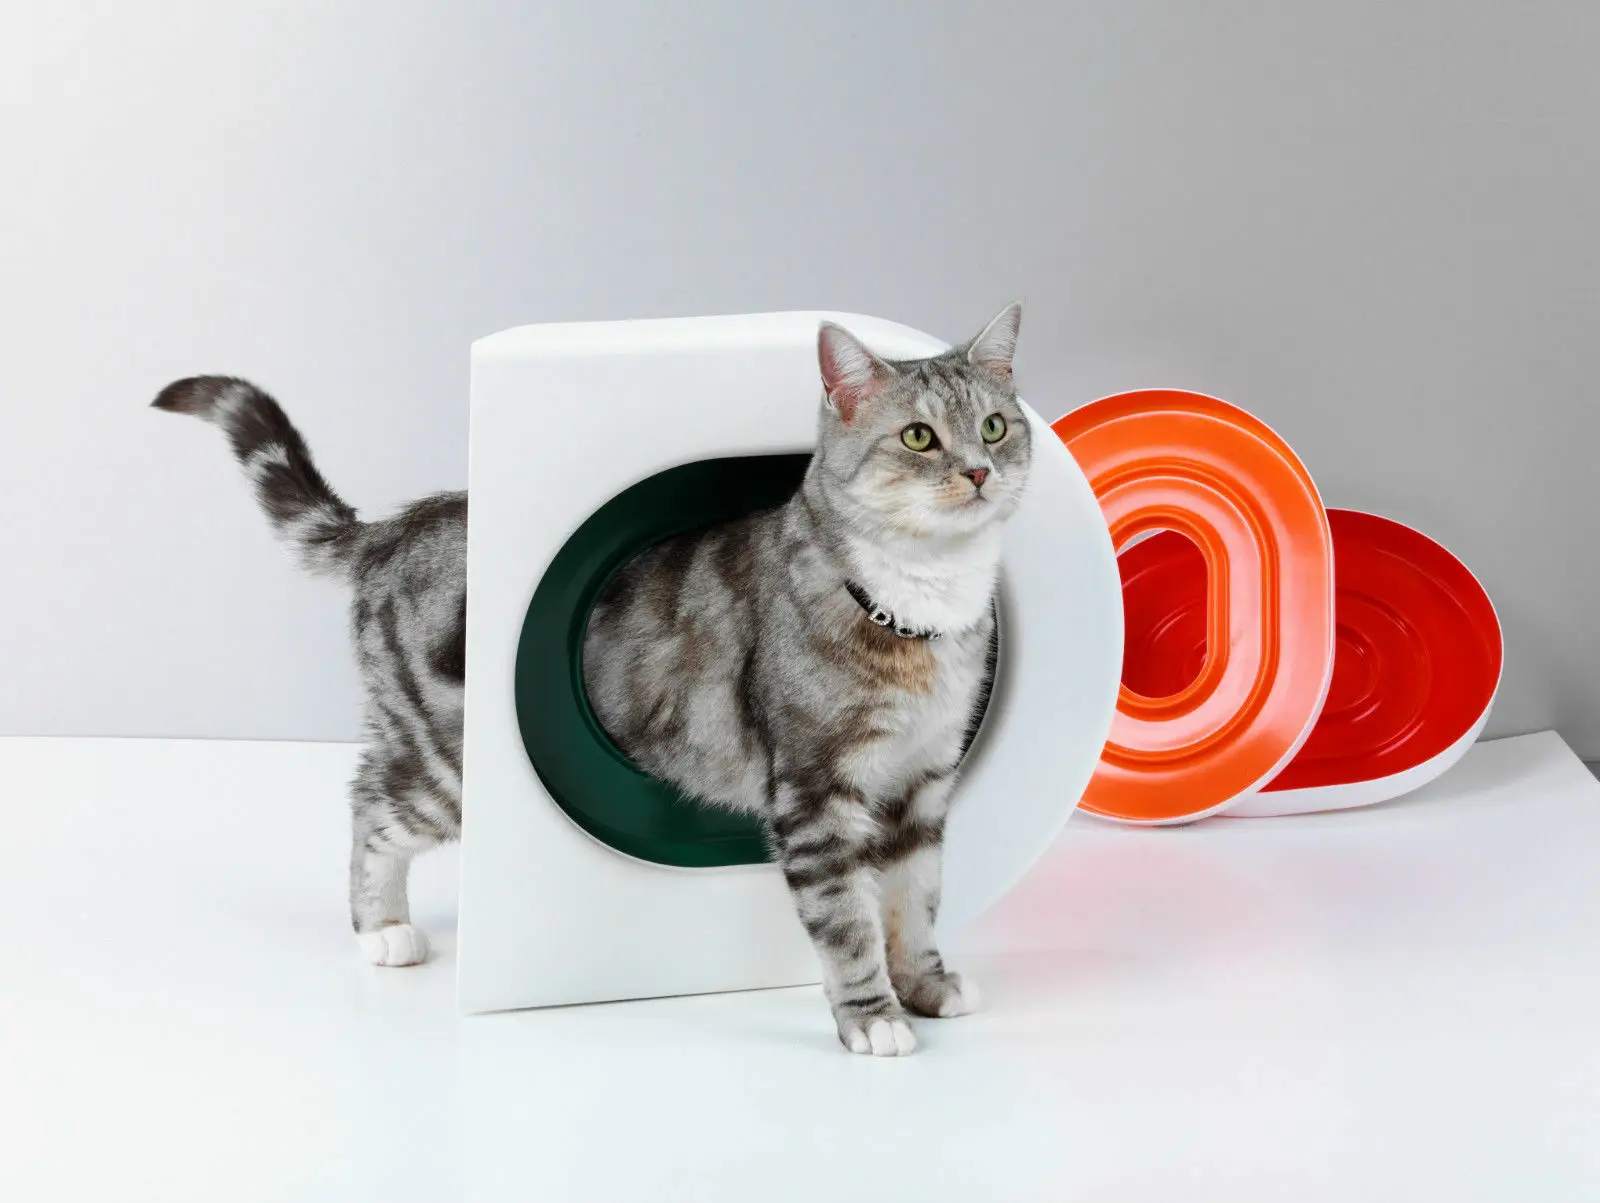 Профессиональная кошка обучение сиденье для унитаза Pet Box Kit поезд любовь чистые кошки использовать унитаз для людей легко узнать туалет коробка подарок